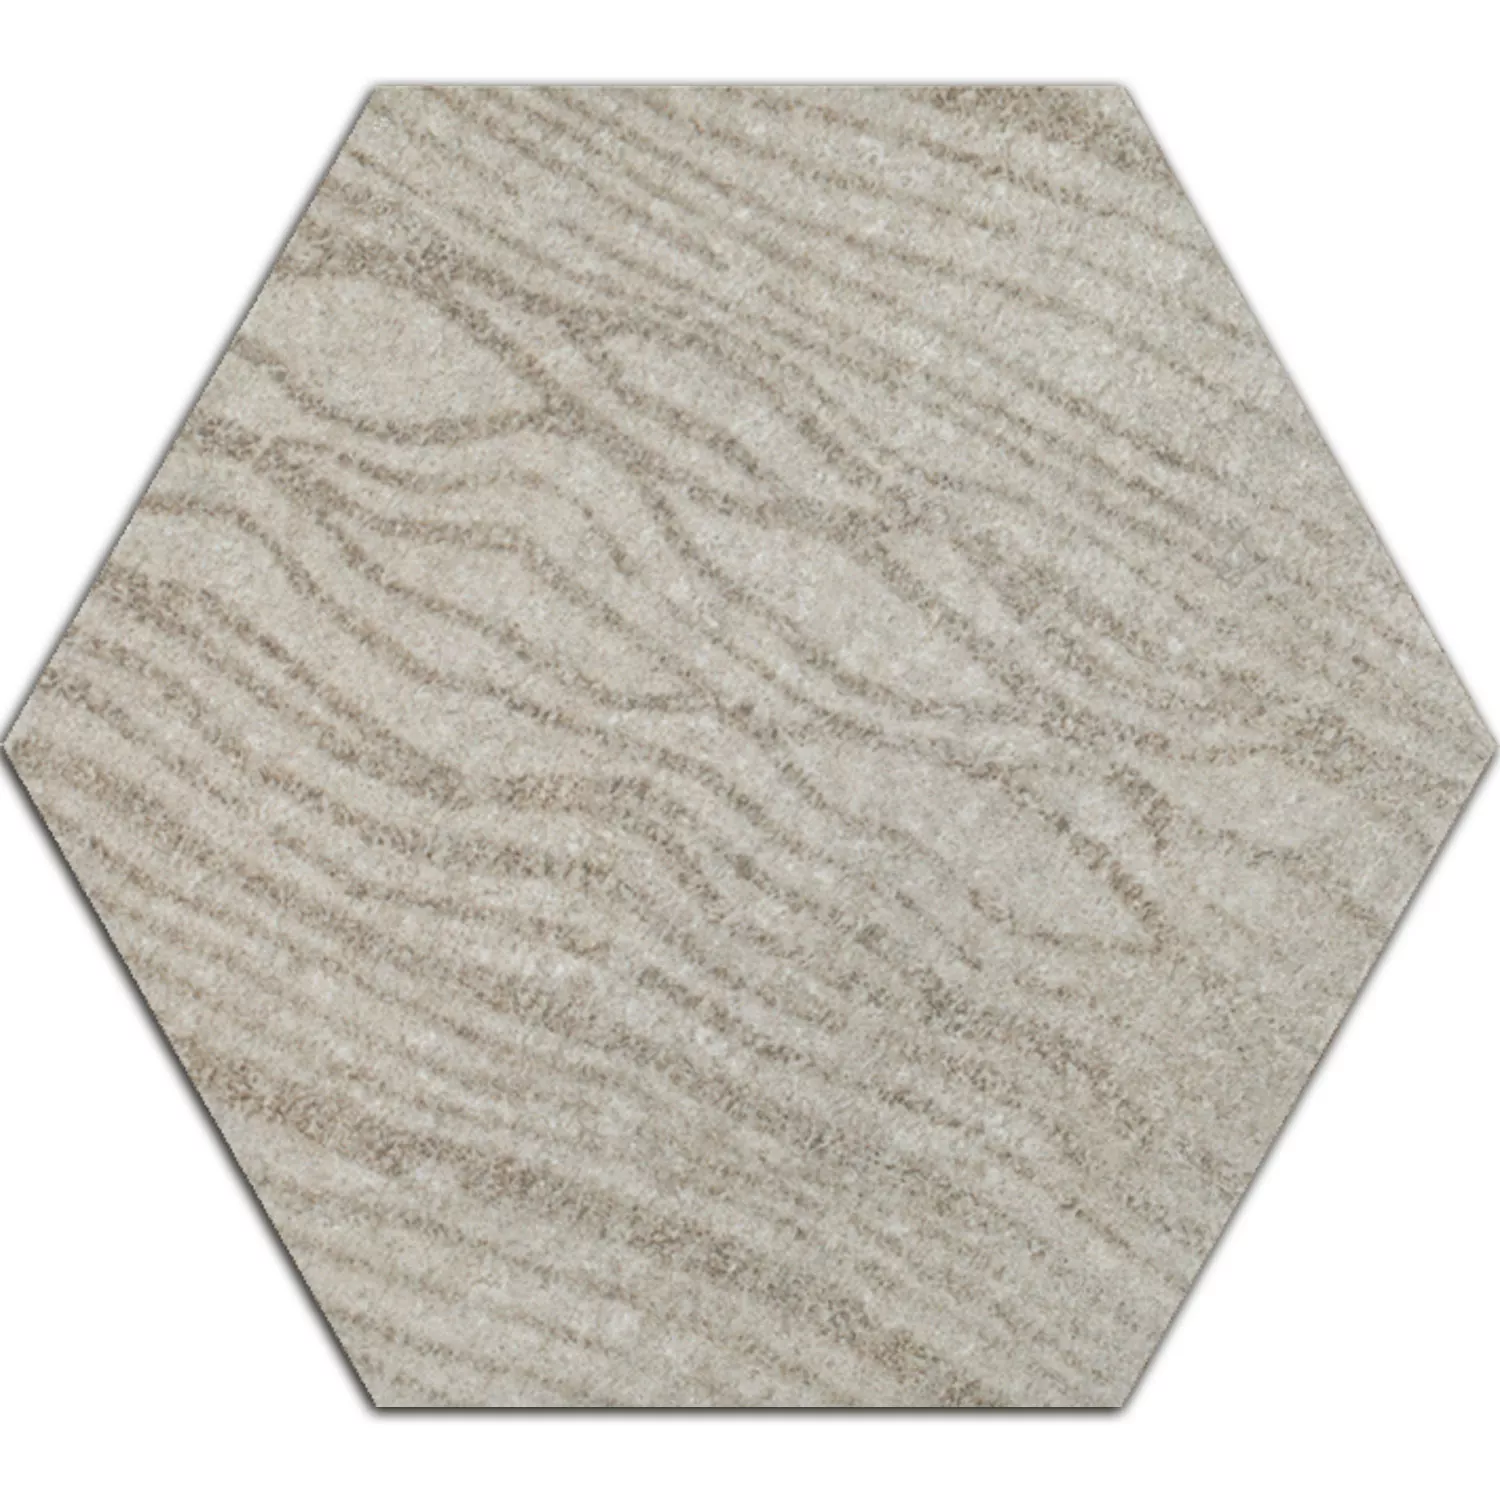 Sample Cement Tiles Optic Decor Hexagon Atlanta Grey